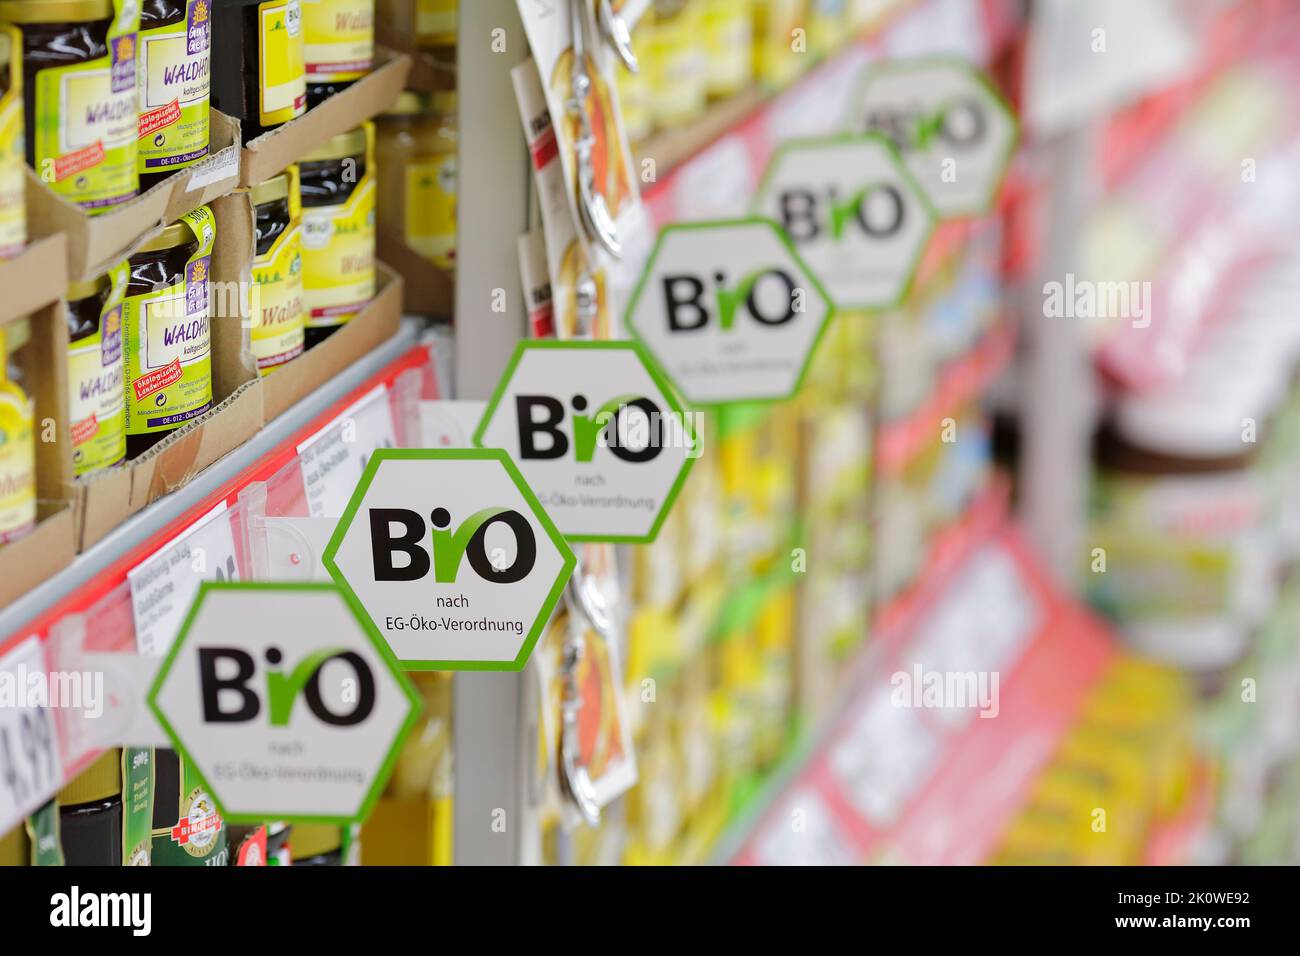 Productos ecológicos en un supermercado en Alemania con la etiqueta de información: Orgánicos según la normativa ecológica de la UE (Bio nach EU-Verordnung) Foto de stock